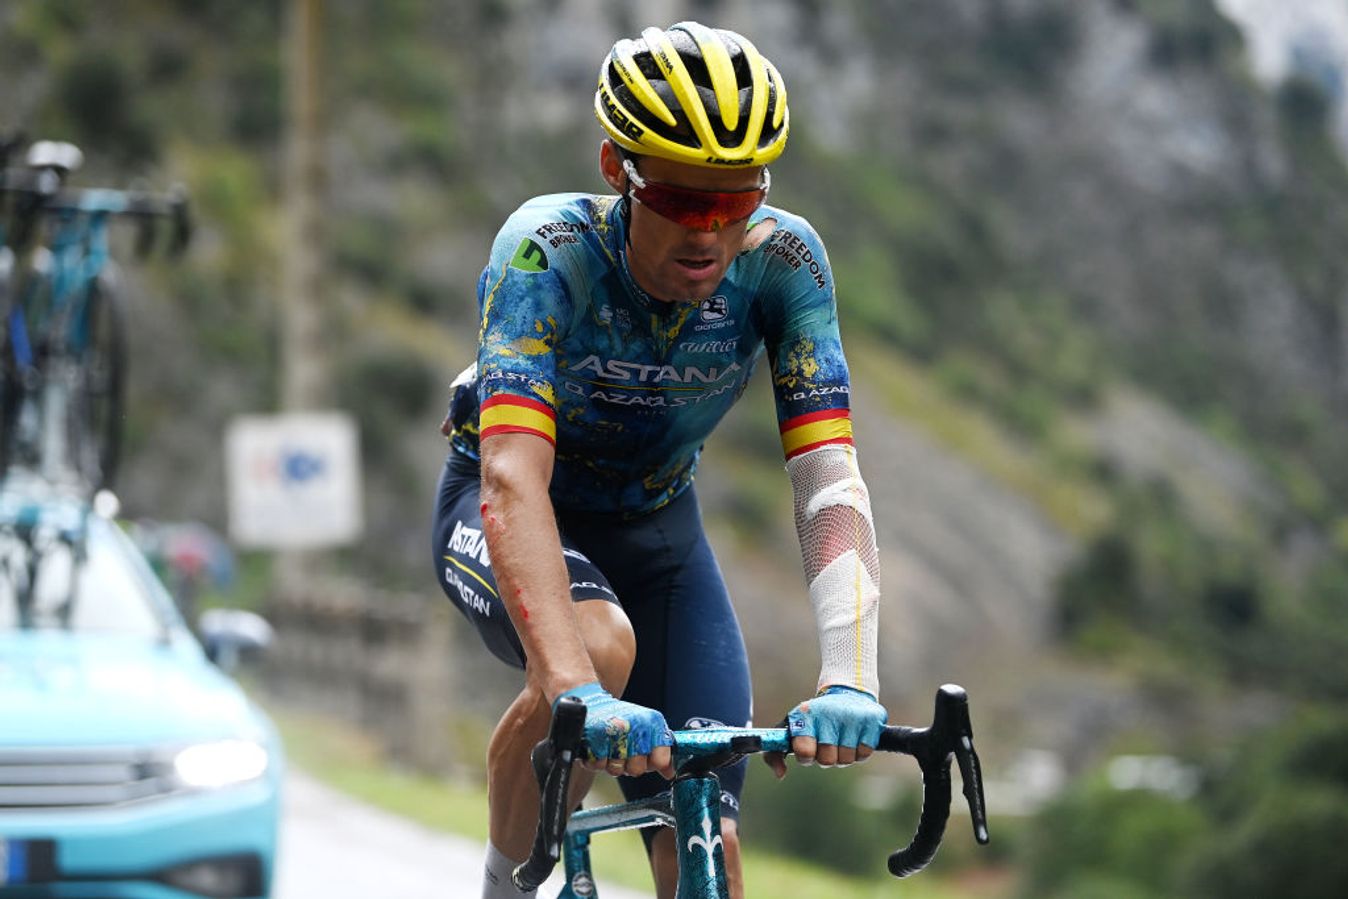 Luis León Sánchez bandaged up at his final race, the 2023 Vuelta a España